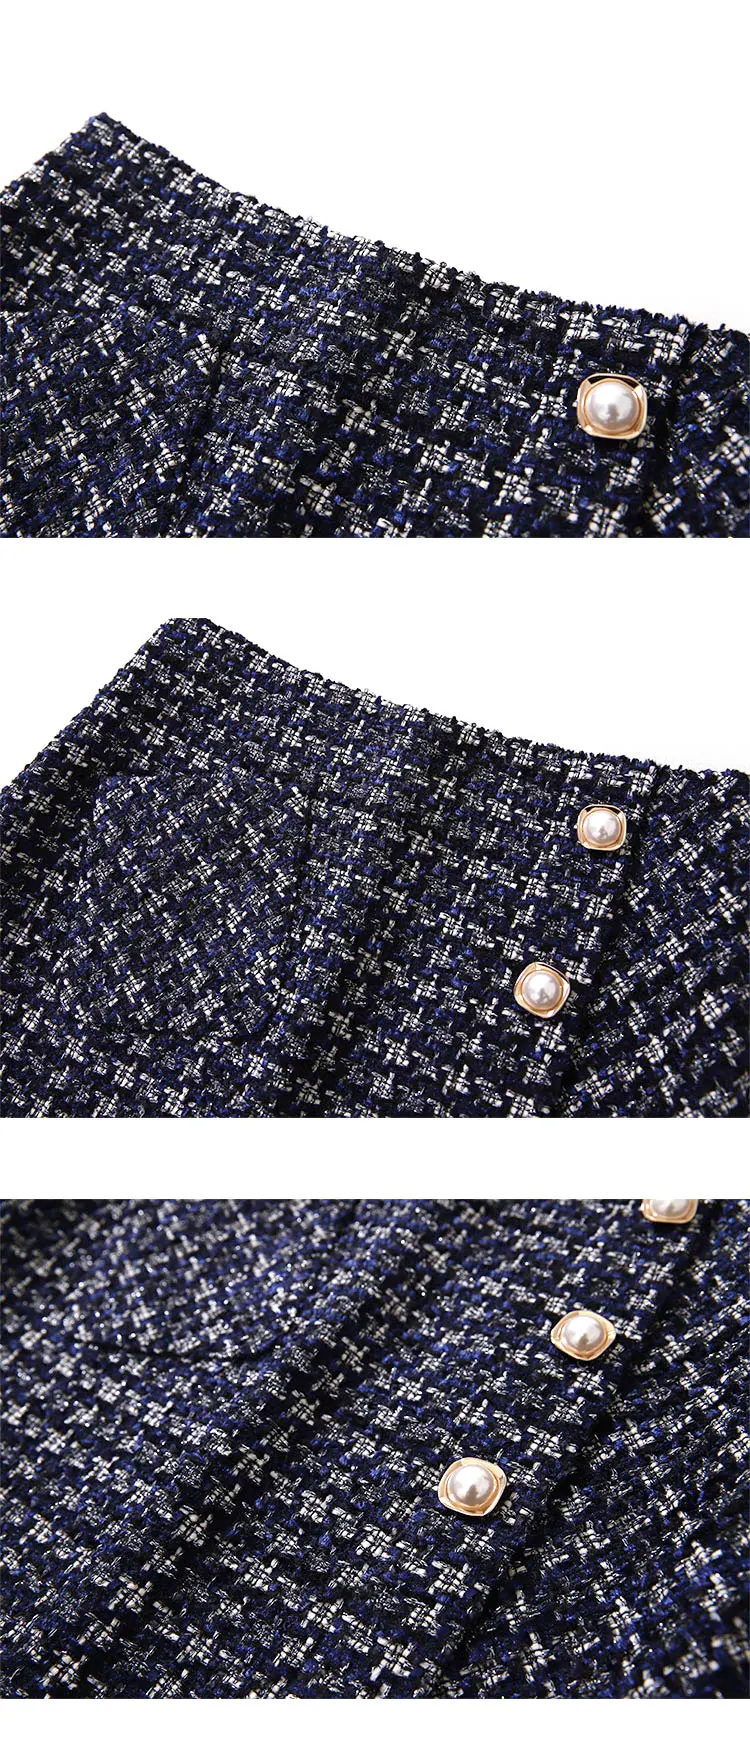 Новый Винтаж для женщин плед твидовые юбки 2019 дамы OL Элегантный Bodycon пуговицы карман мини Короткая юбка Y156